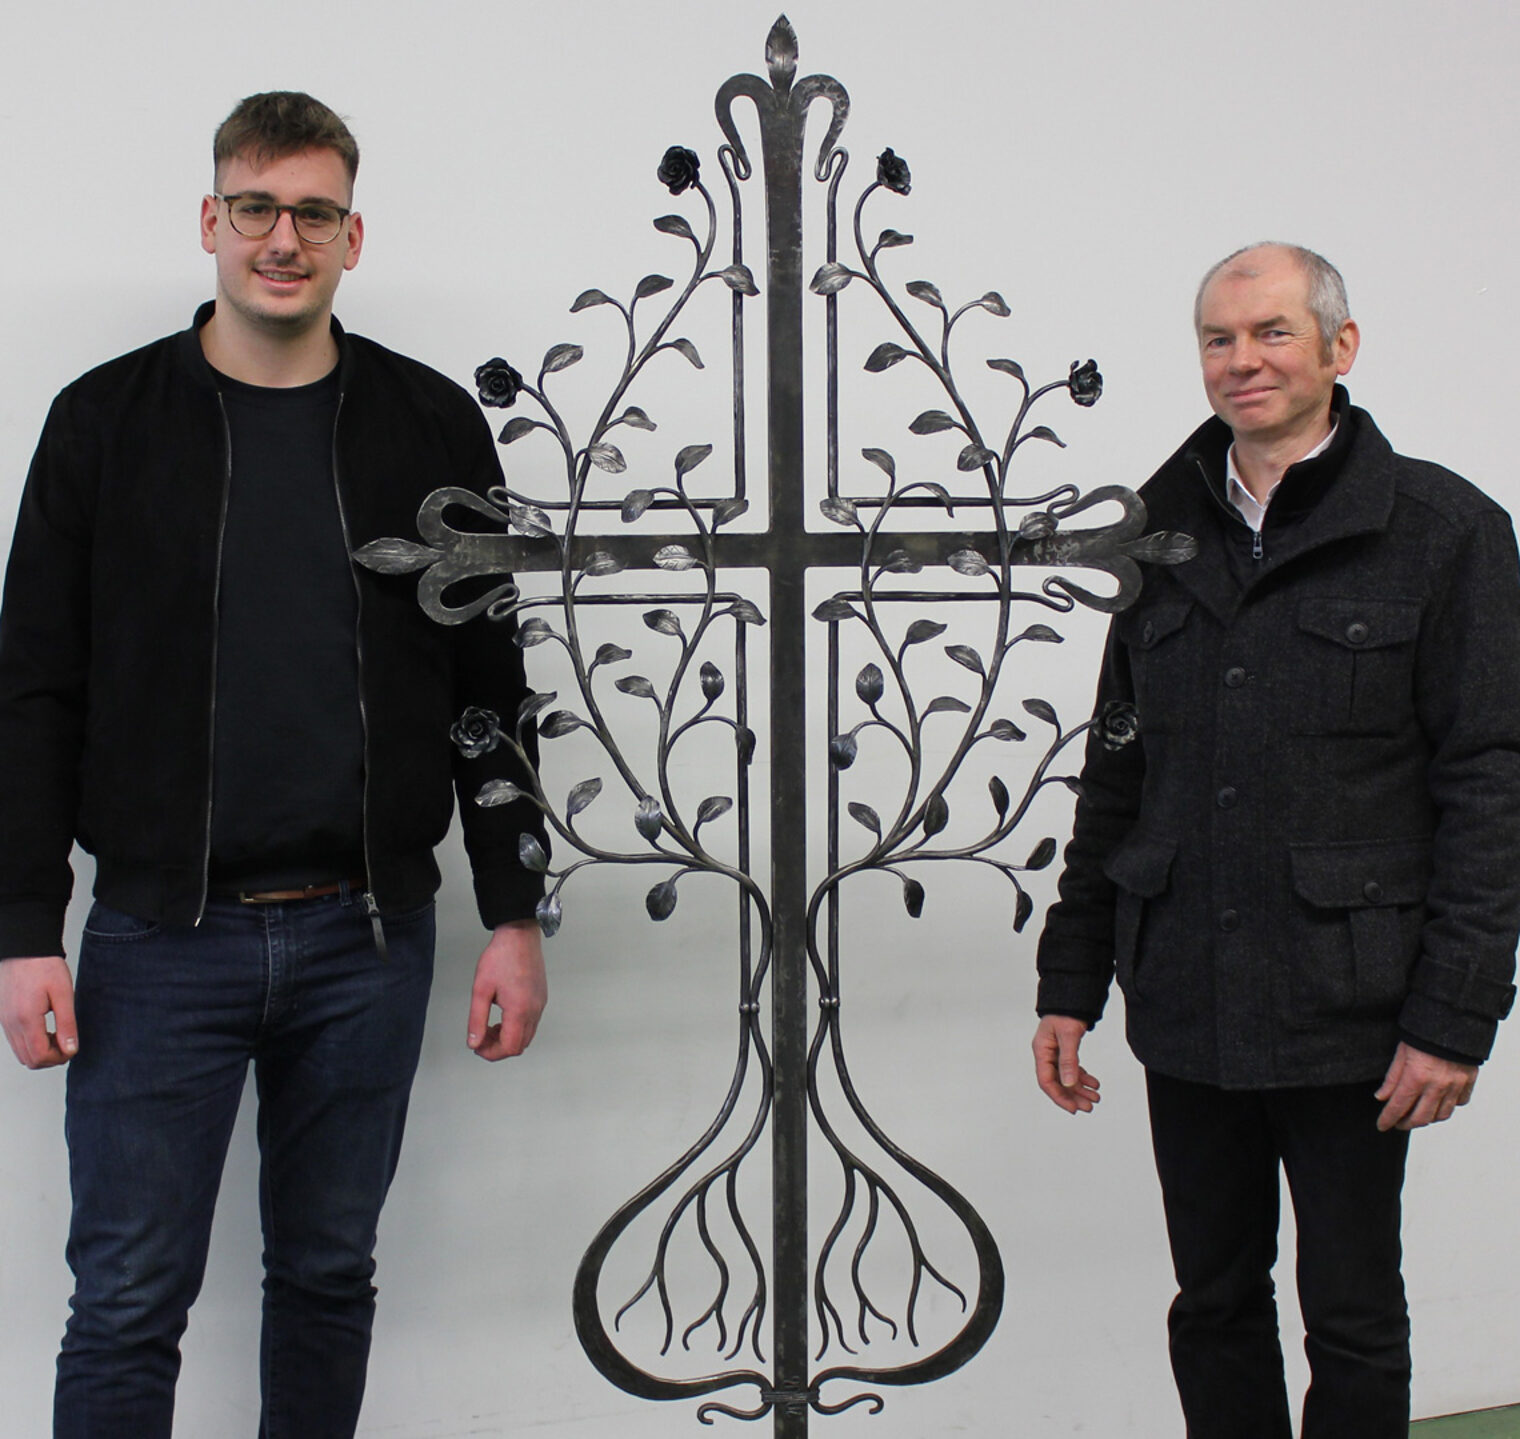 Glückwünsche gingen an Benedikt Huber zum Ergebnis seiner fachpraktischen Prüfung: Das Grabkreuz "Baum des Lebens".